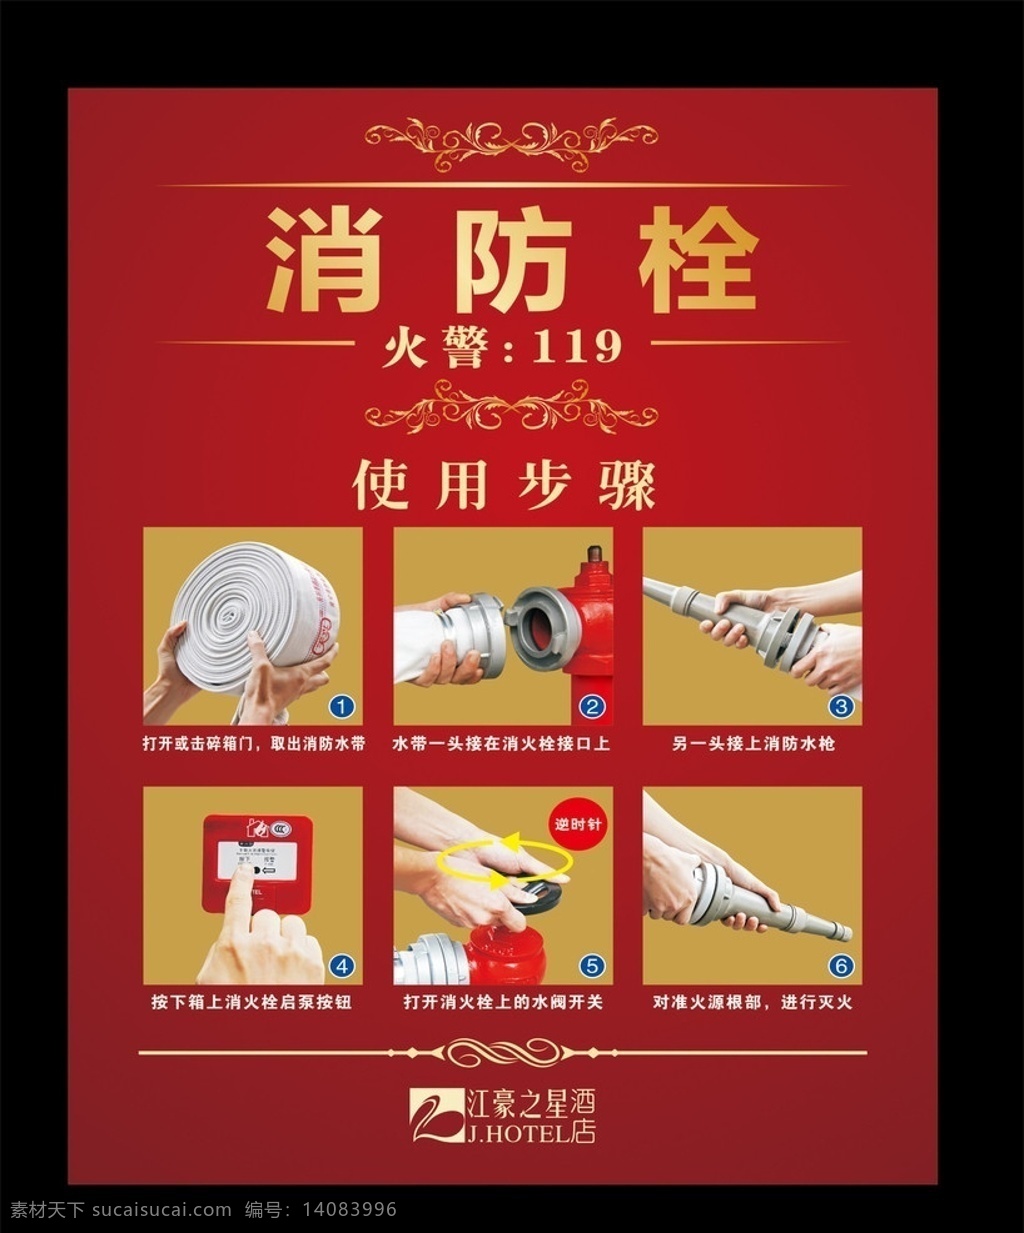 酒店 消防栓 海报 欧式 灭火方法 如何灭火 使用步骤 图示 解说 灭火 模板 公司 矢量